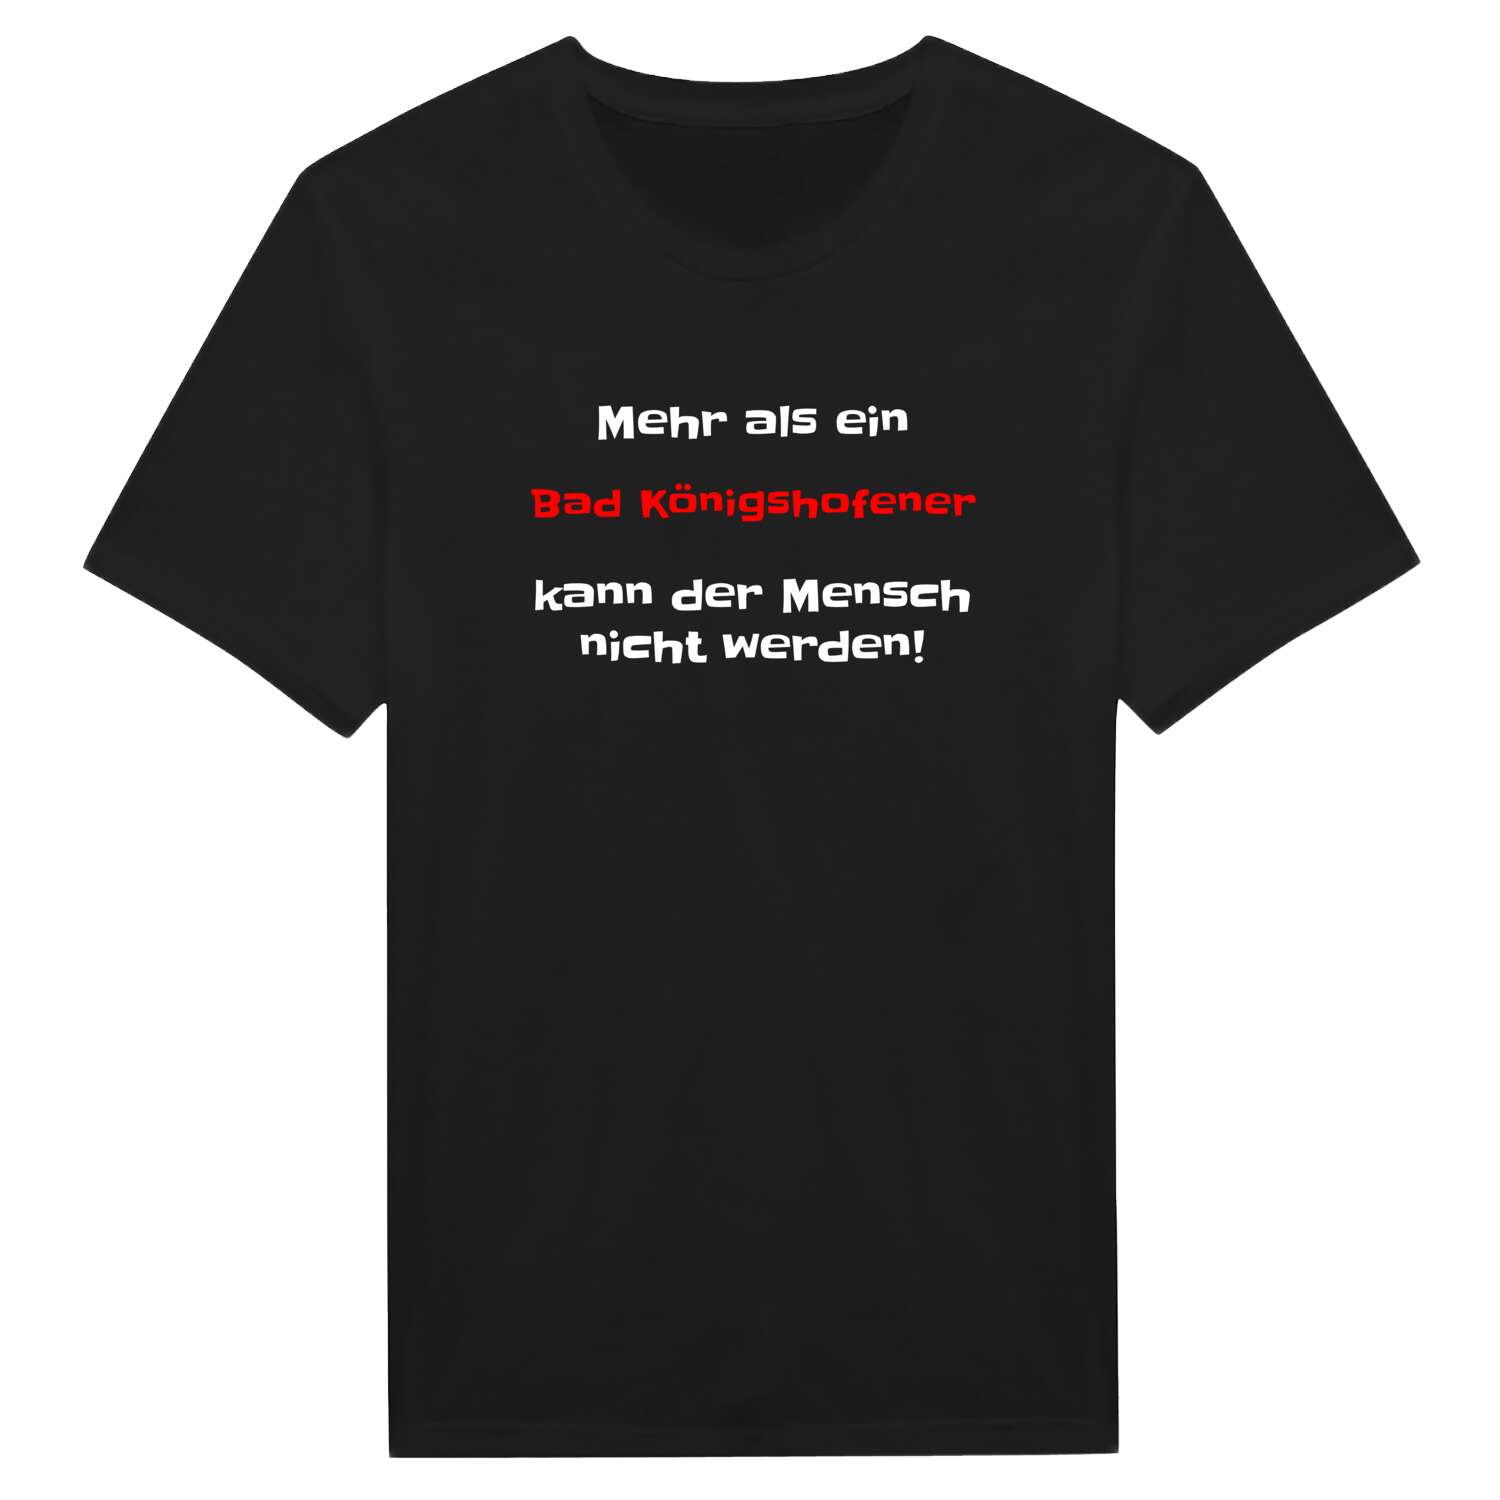 Bad Königshofen T-Shirt »Mehr als ein«